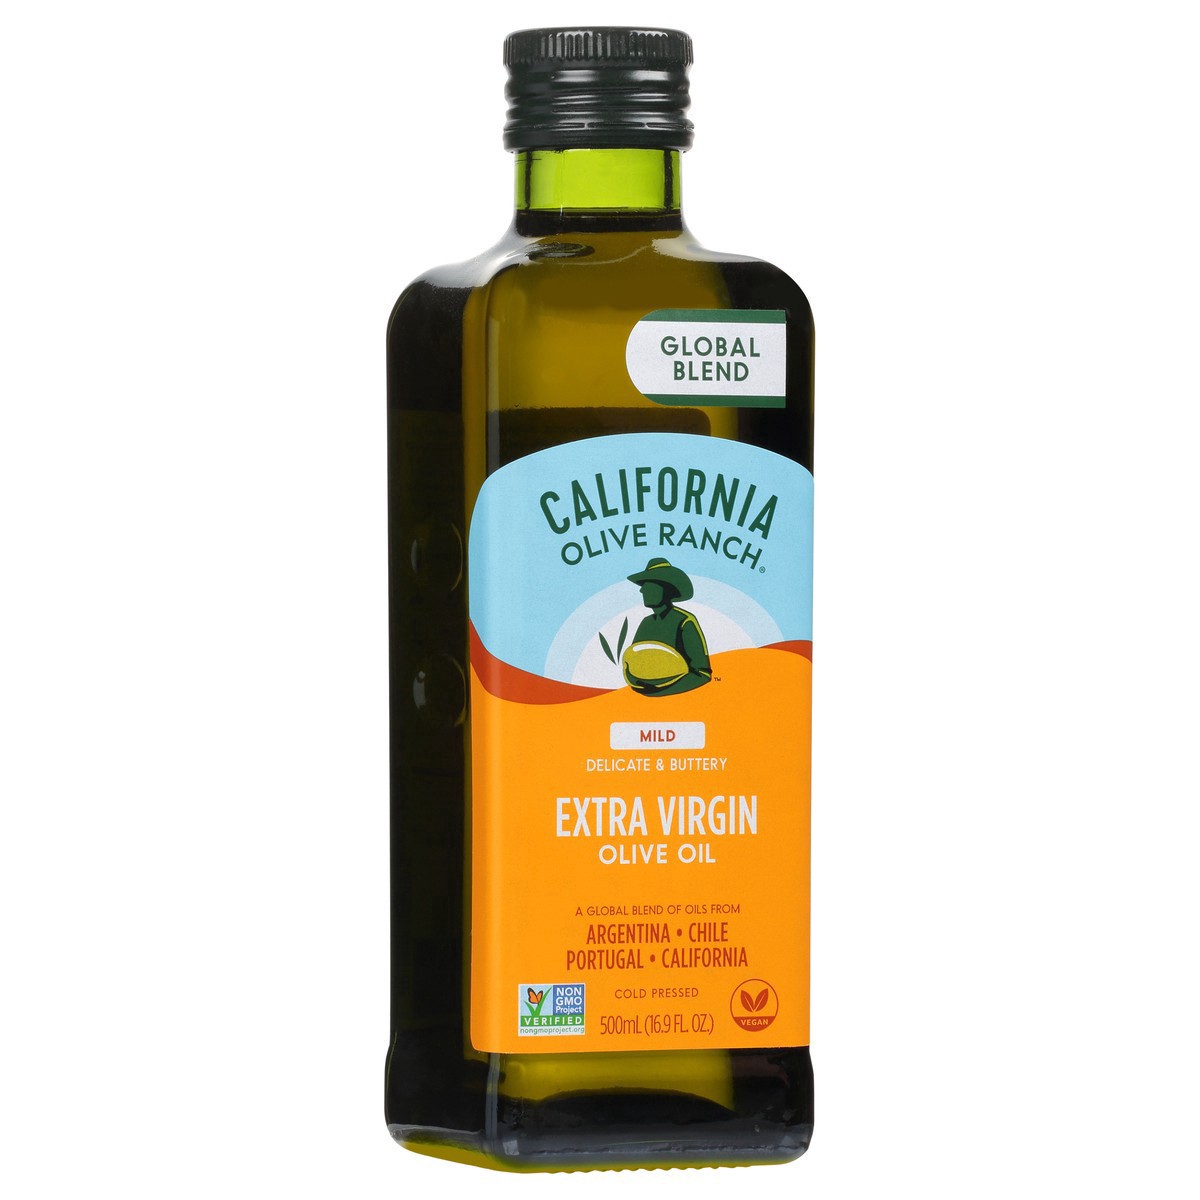 slide 14 of 21, California Olive Ranch Global Blend Mild Extra Virgin Olive Oil - 16.9 fl oz, 